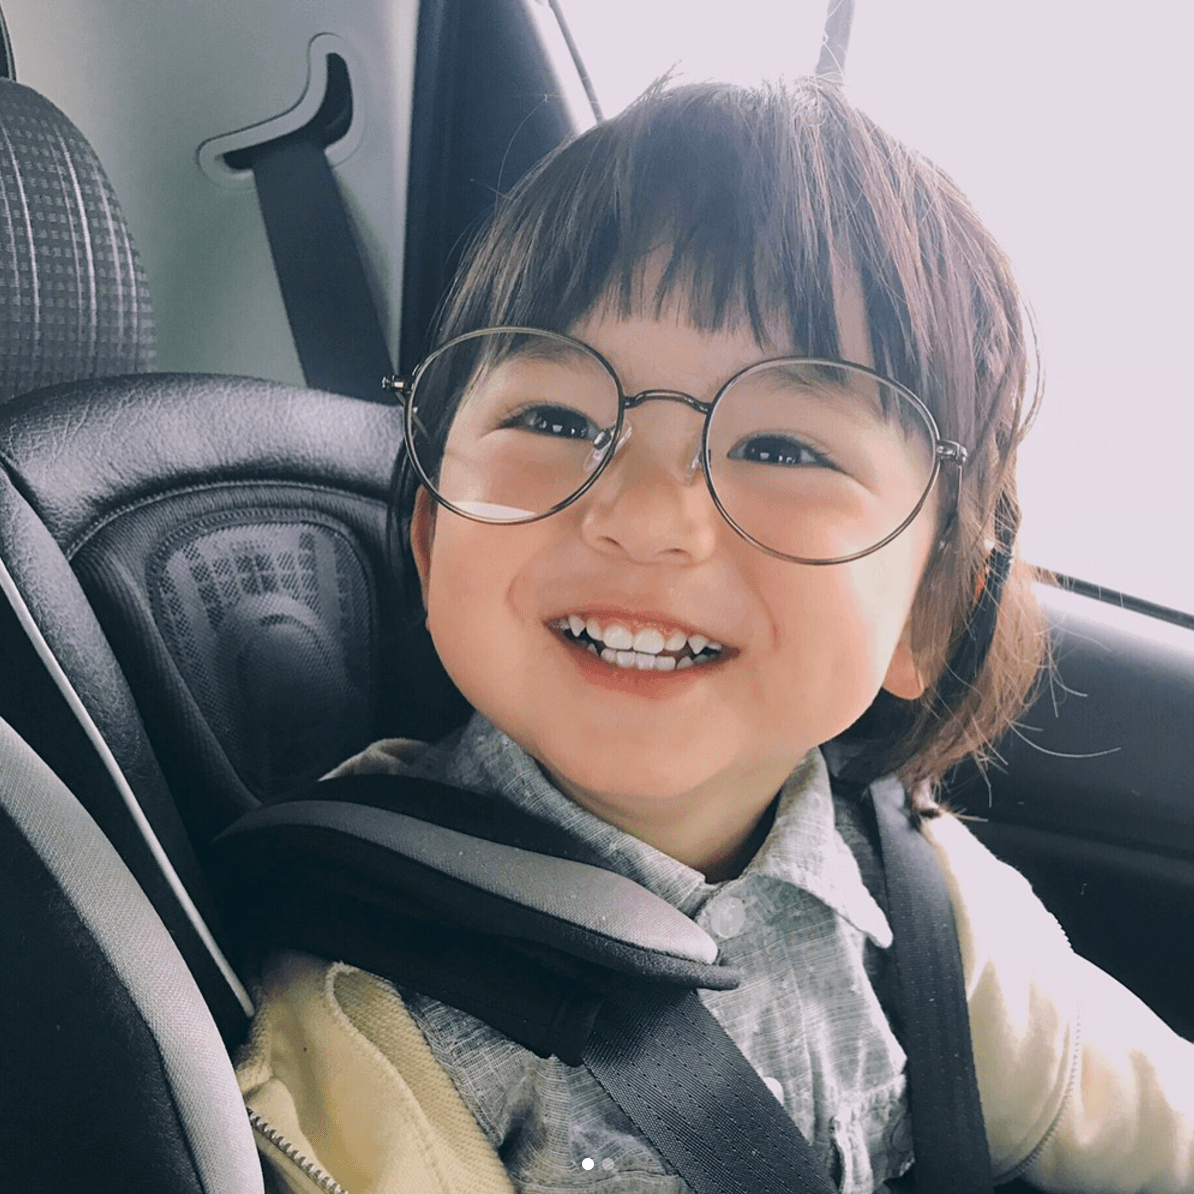 Em bé Nhật instagram sẽ đem đến cho bạn những bức ảnh đầy trẻ trung và năng động của các bé Nhật. Hãy cùng theo dõi những post trên trang cá nhân và khám phá những hoạt động thú vị và dễ thương của các bé trong cuộc sống hằng ngày.